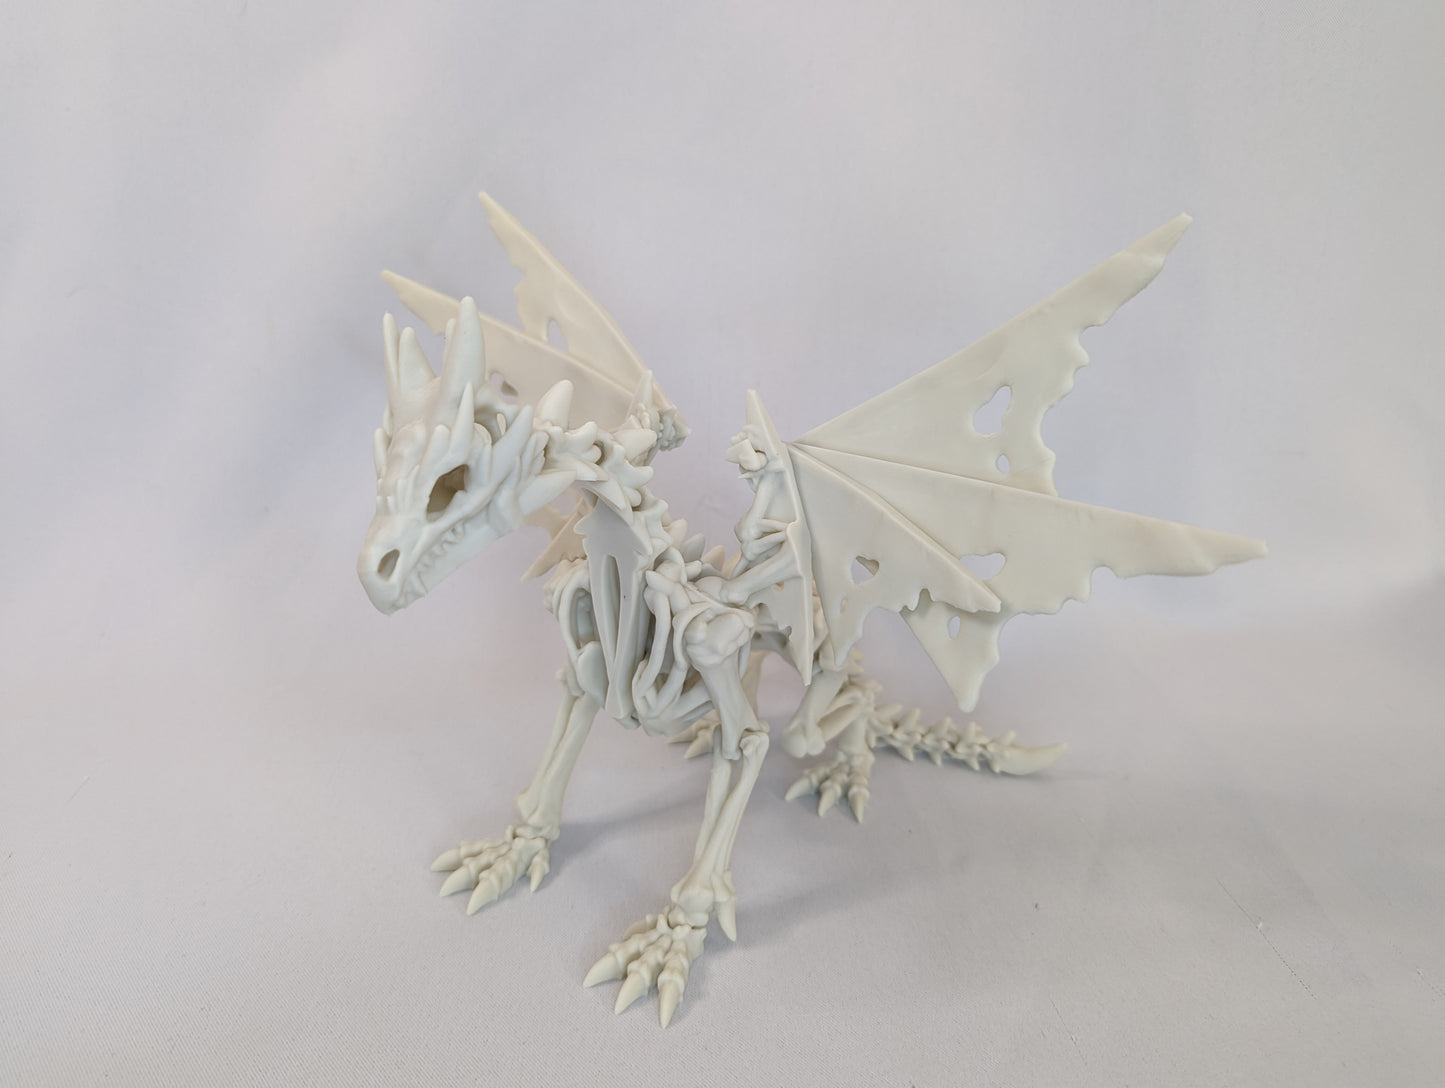 Wraithwing Dragon